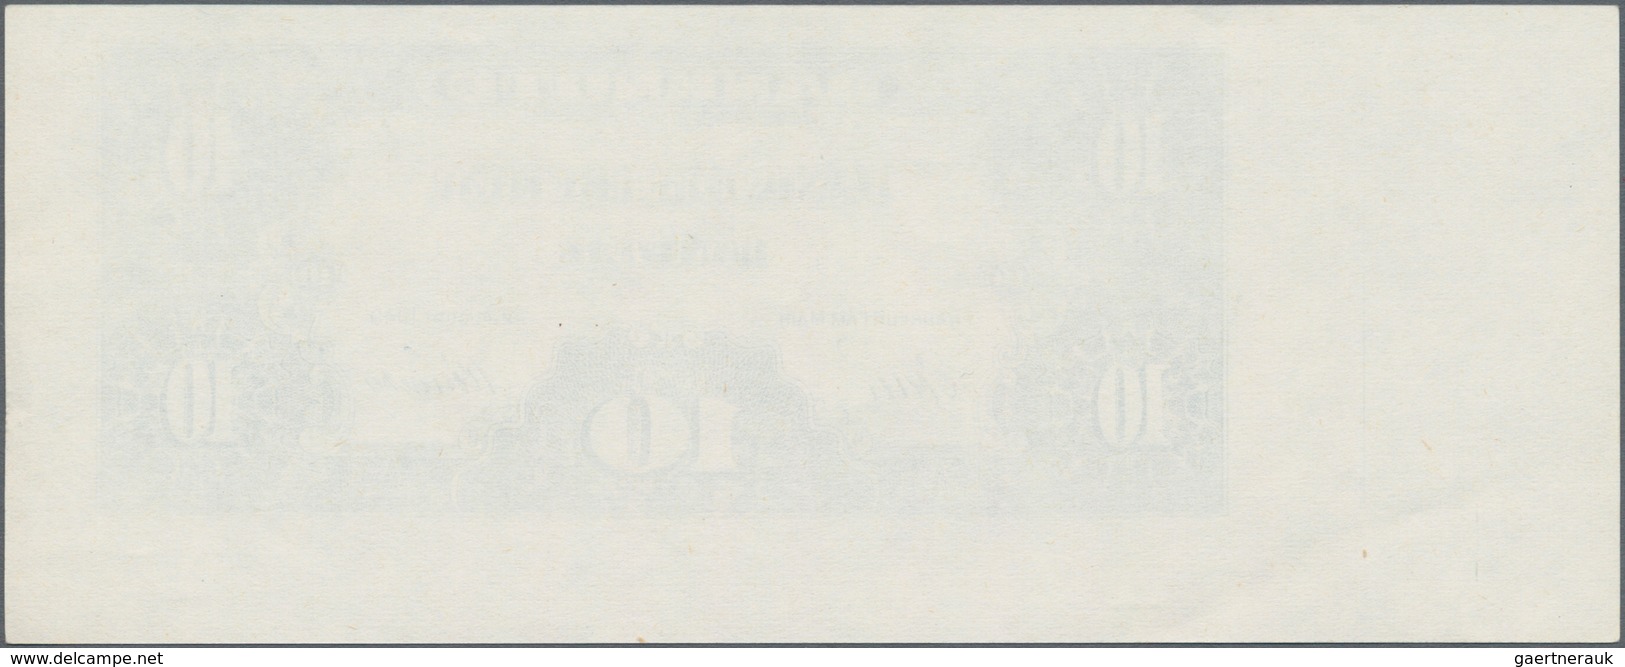 Deutschland - Bank Deutscher Länder + Bundesrepublik Deutschland: 10 DM 1949, Offset Druck Der Rücks - Autres & Non Classés